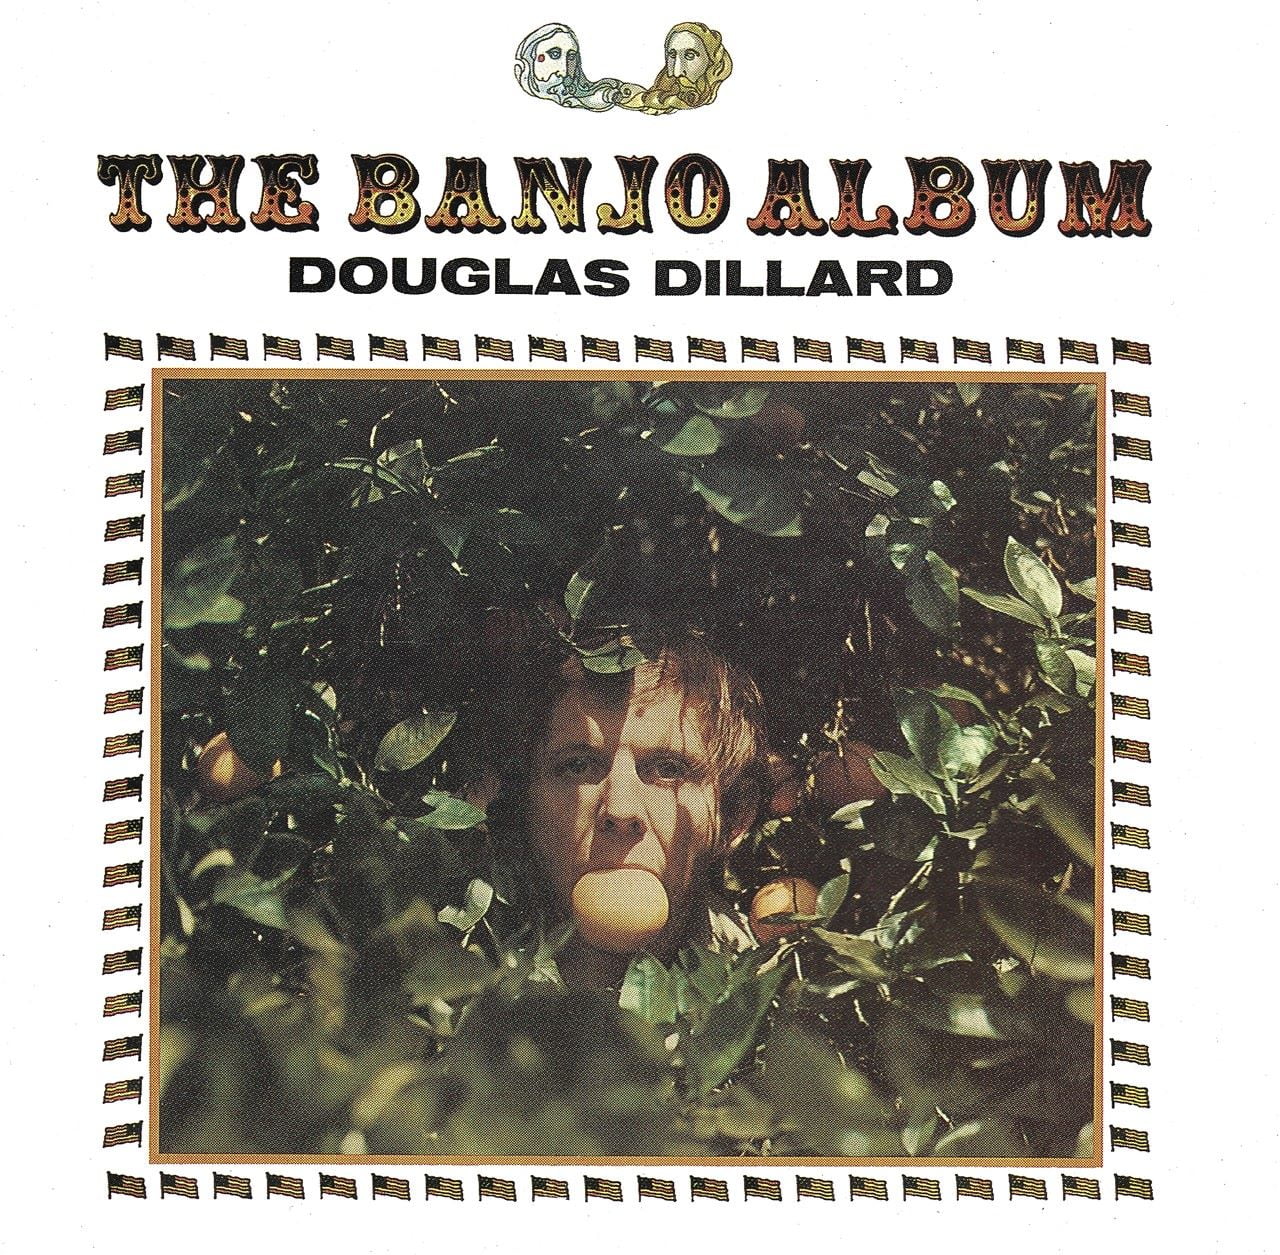 Recensione album di Douglas Dillard – “The Banjo Album” a cura di Remo Ricaldone 2012